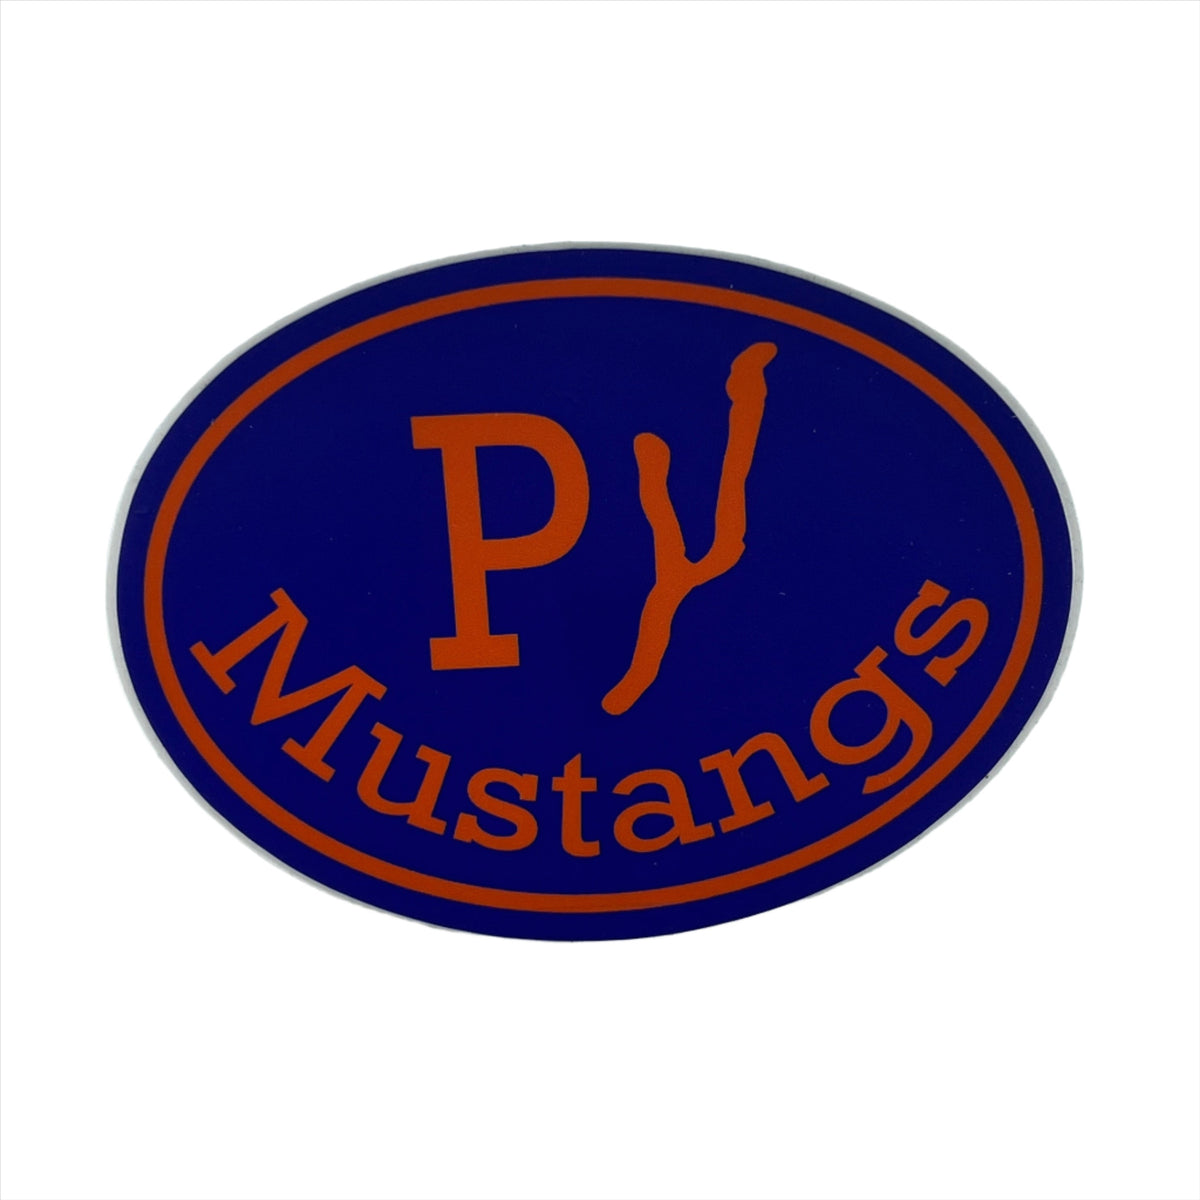 Penn Yan Mustangs 4" Sticker or Fridge Magnet